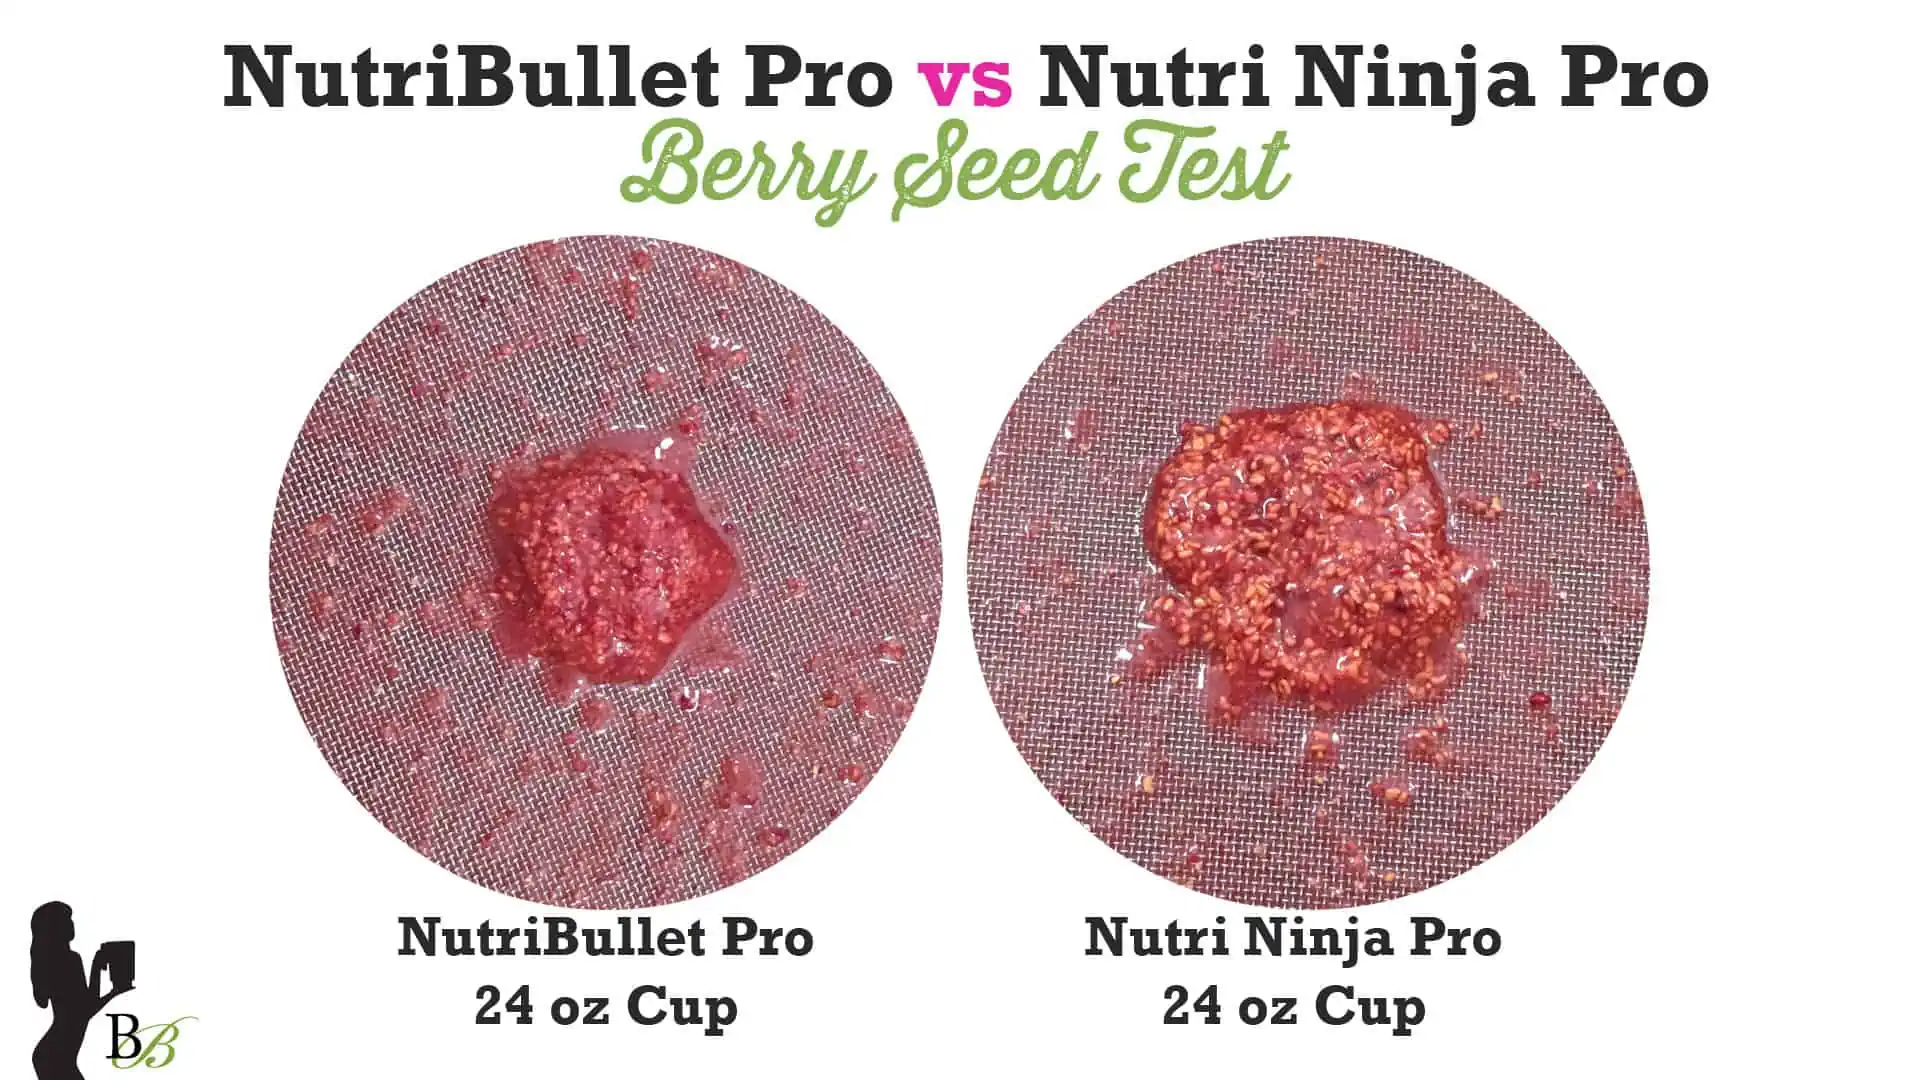 Nutribullet vs Nutri Ninja Pro Review Performance Tests